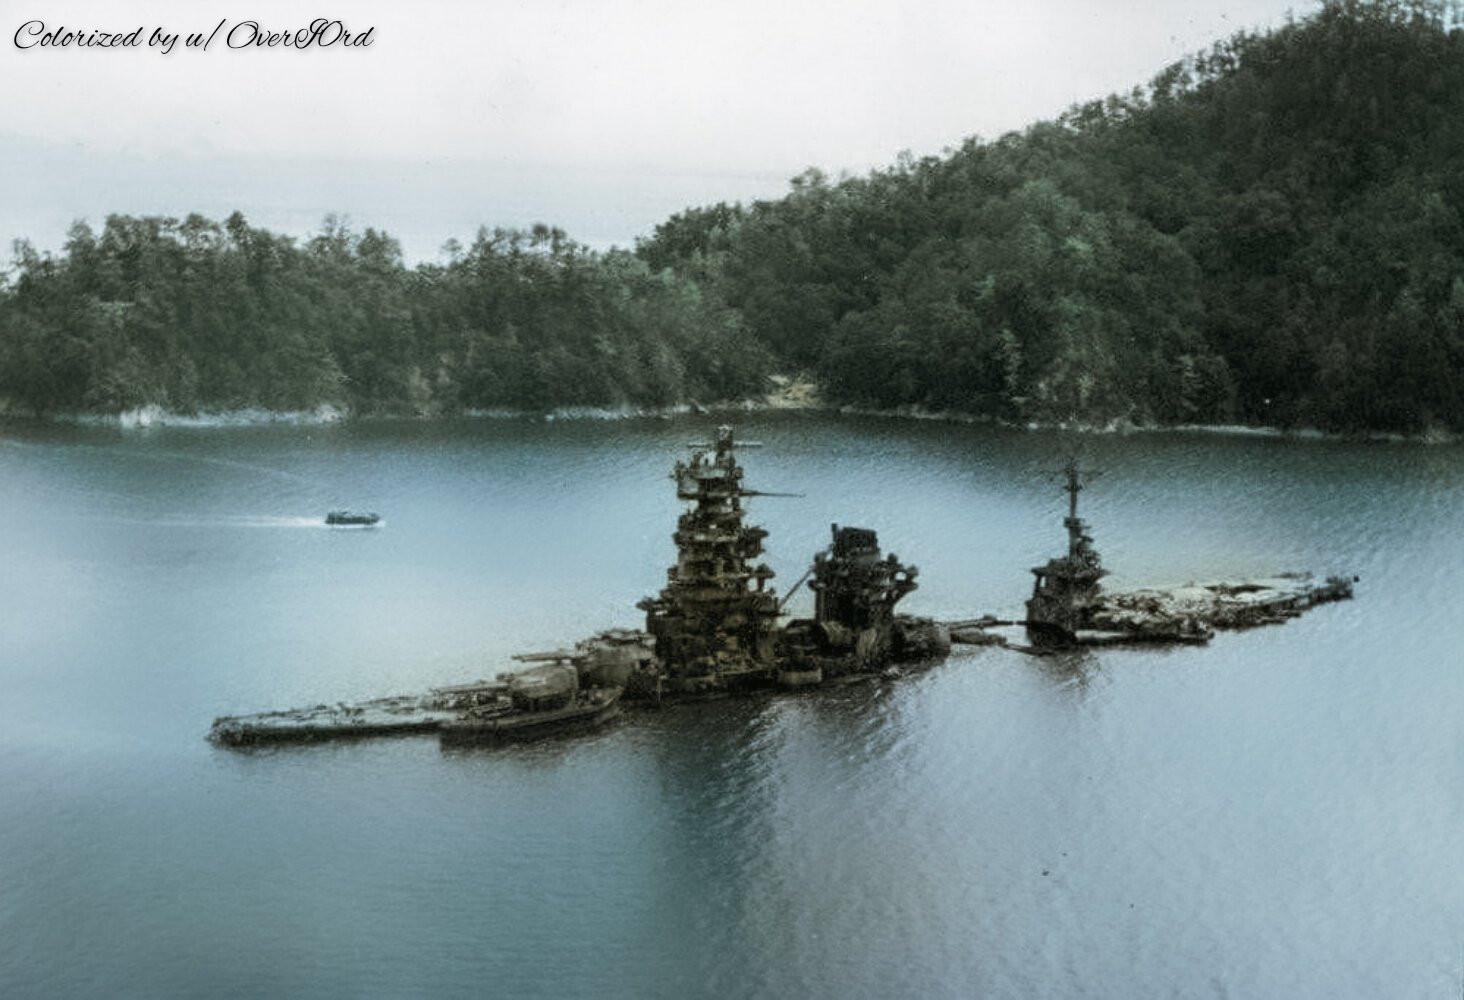 Thiết giáp hạm/Tàu sân bay Hyuga của Nhật Bản bị chìm ở vùng nước nông tại Kure sau khi bị trúng 10 quả bom từ máy bay của Mỹ vào ngày 24/7/1945.